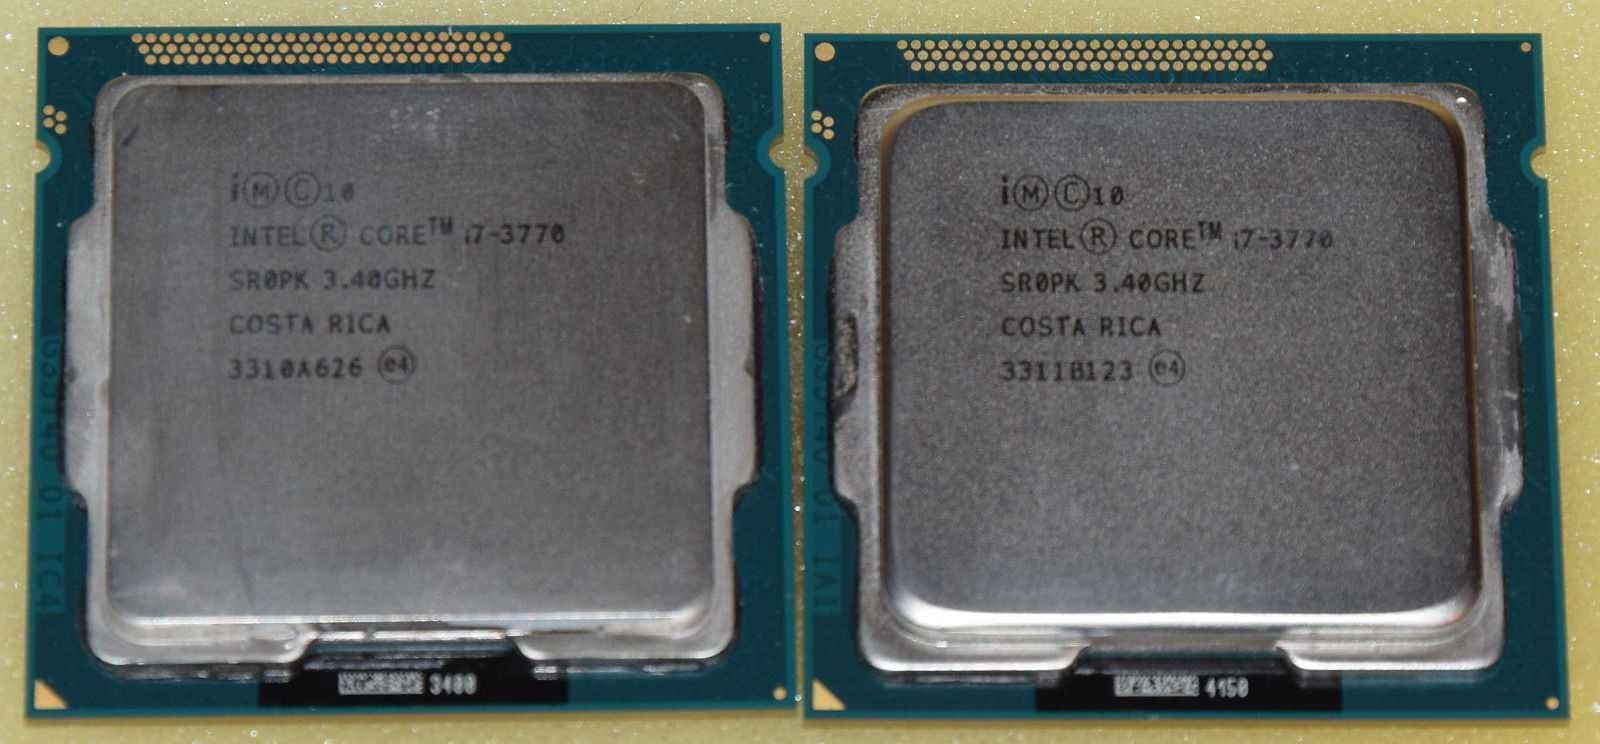 Intel Xeon e3-1230 e3-1240, Core i7-2600 i7-3770 сокет 1155